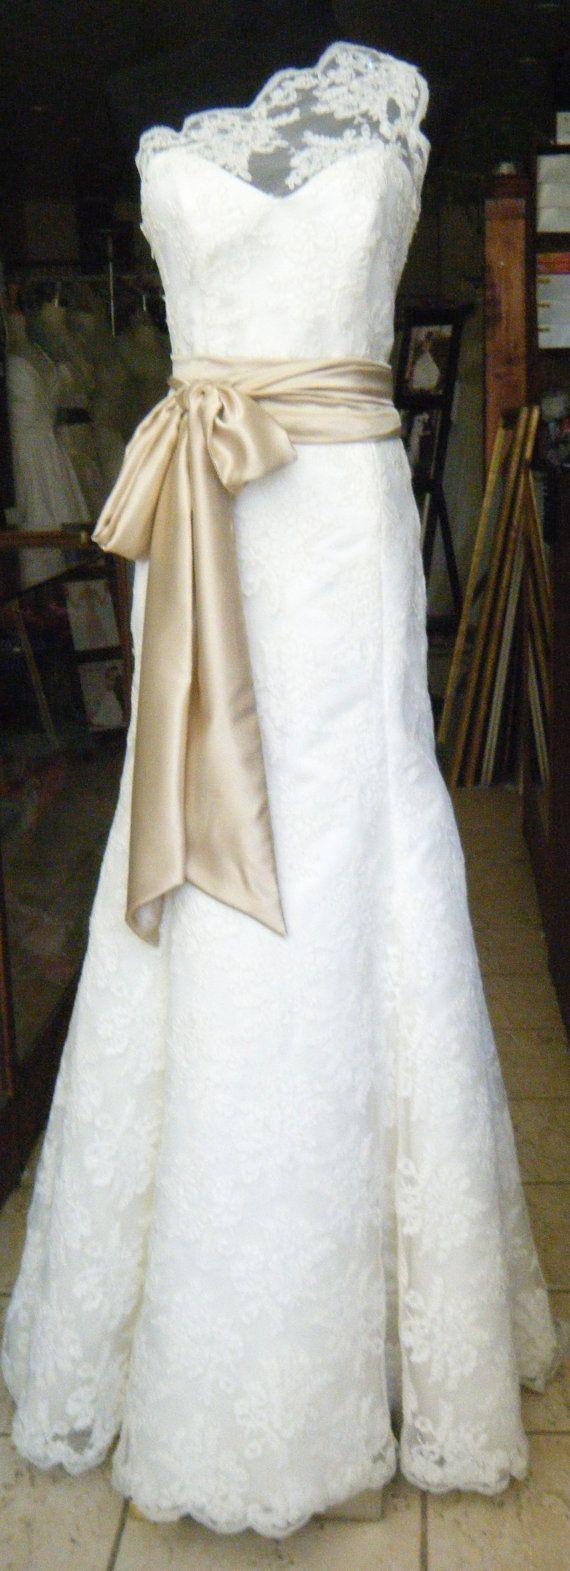 زفاف - فساتين الزفاف لعام 2013 ❤ ️ 2014